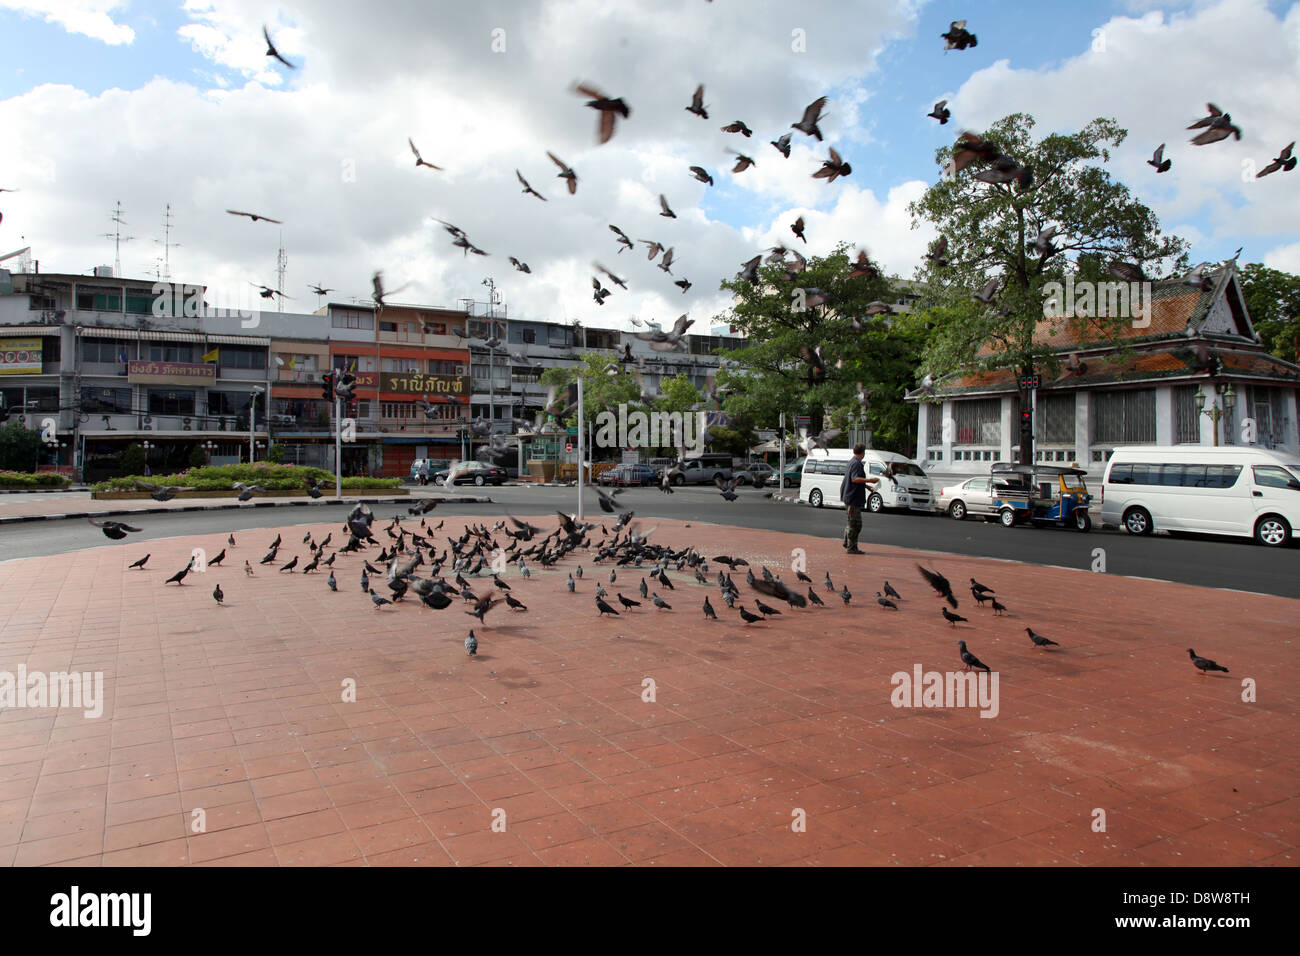 Si tratta di una foto di molti uccelli che volano lontano da spavento in piazza a Bangkok in Thailandia. Non vi è nessuno in giro per la strada Foto Stock